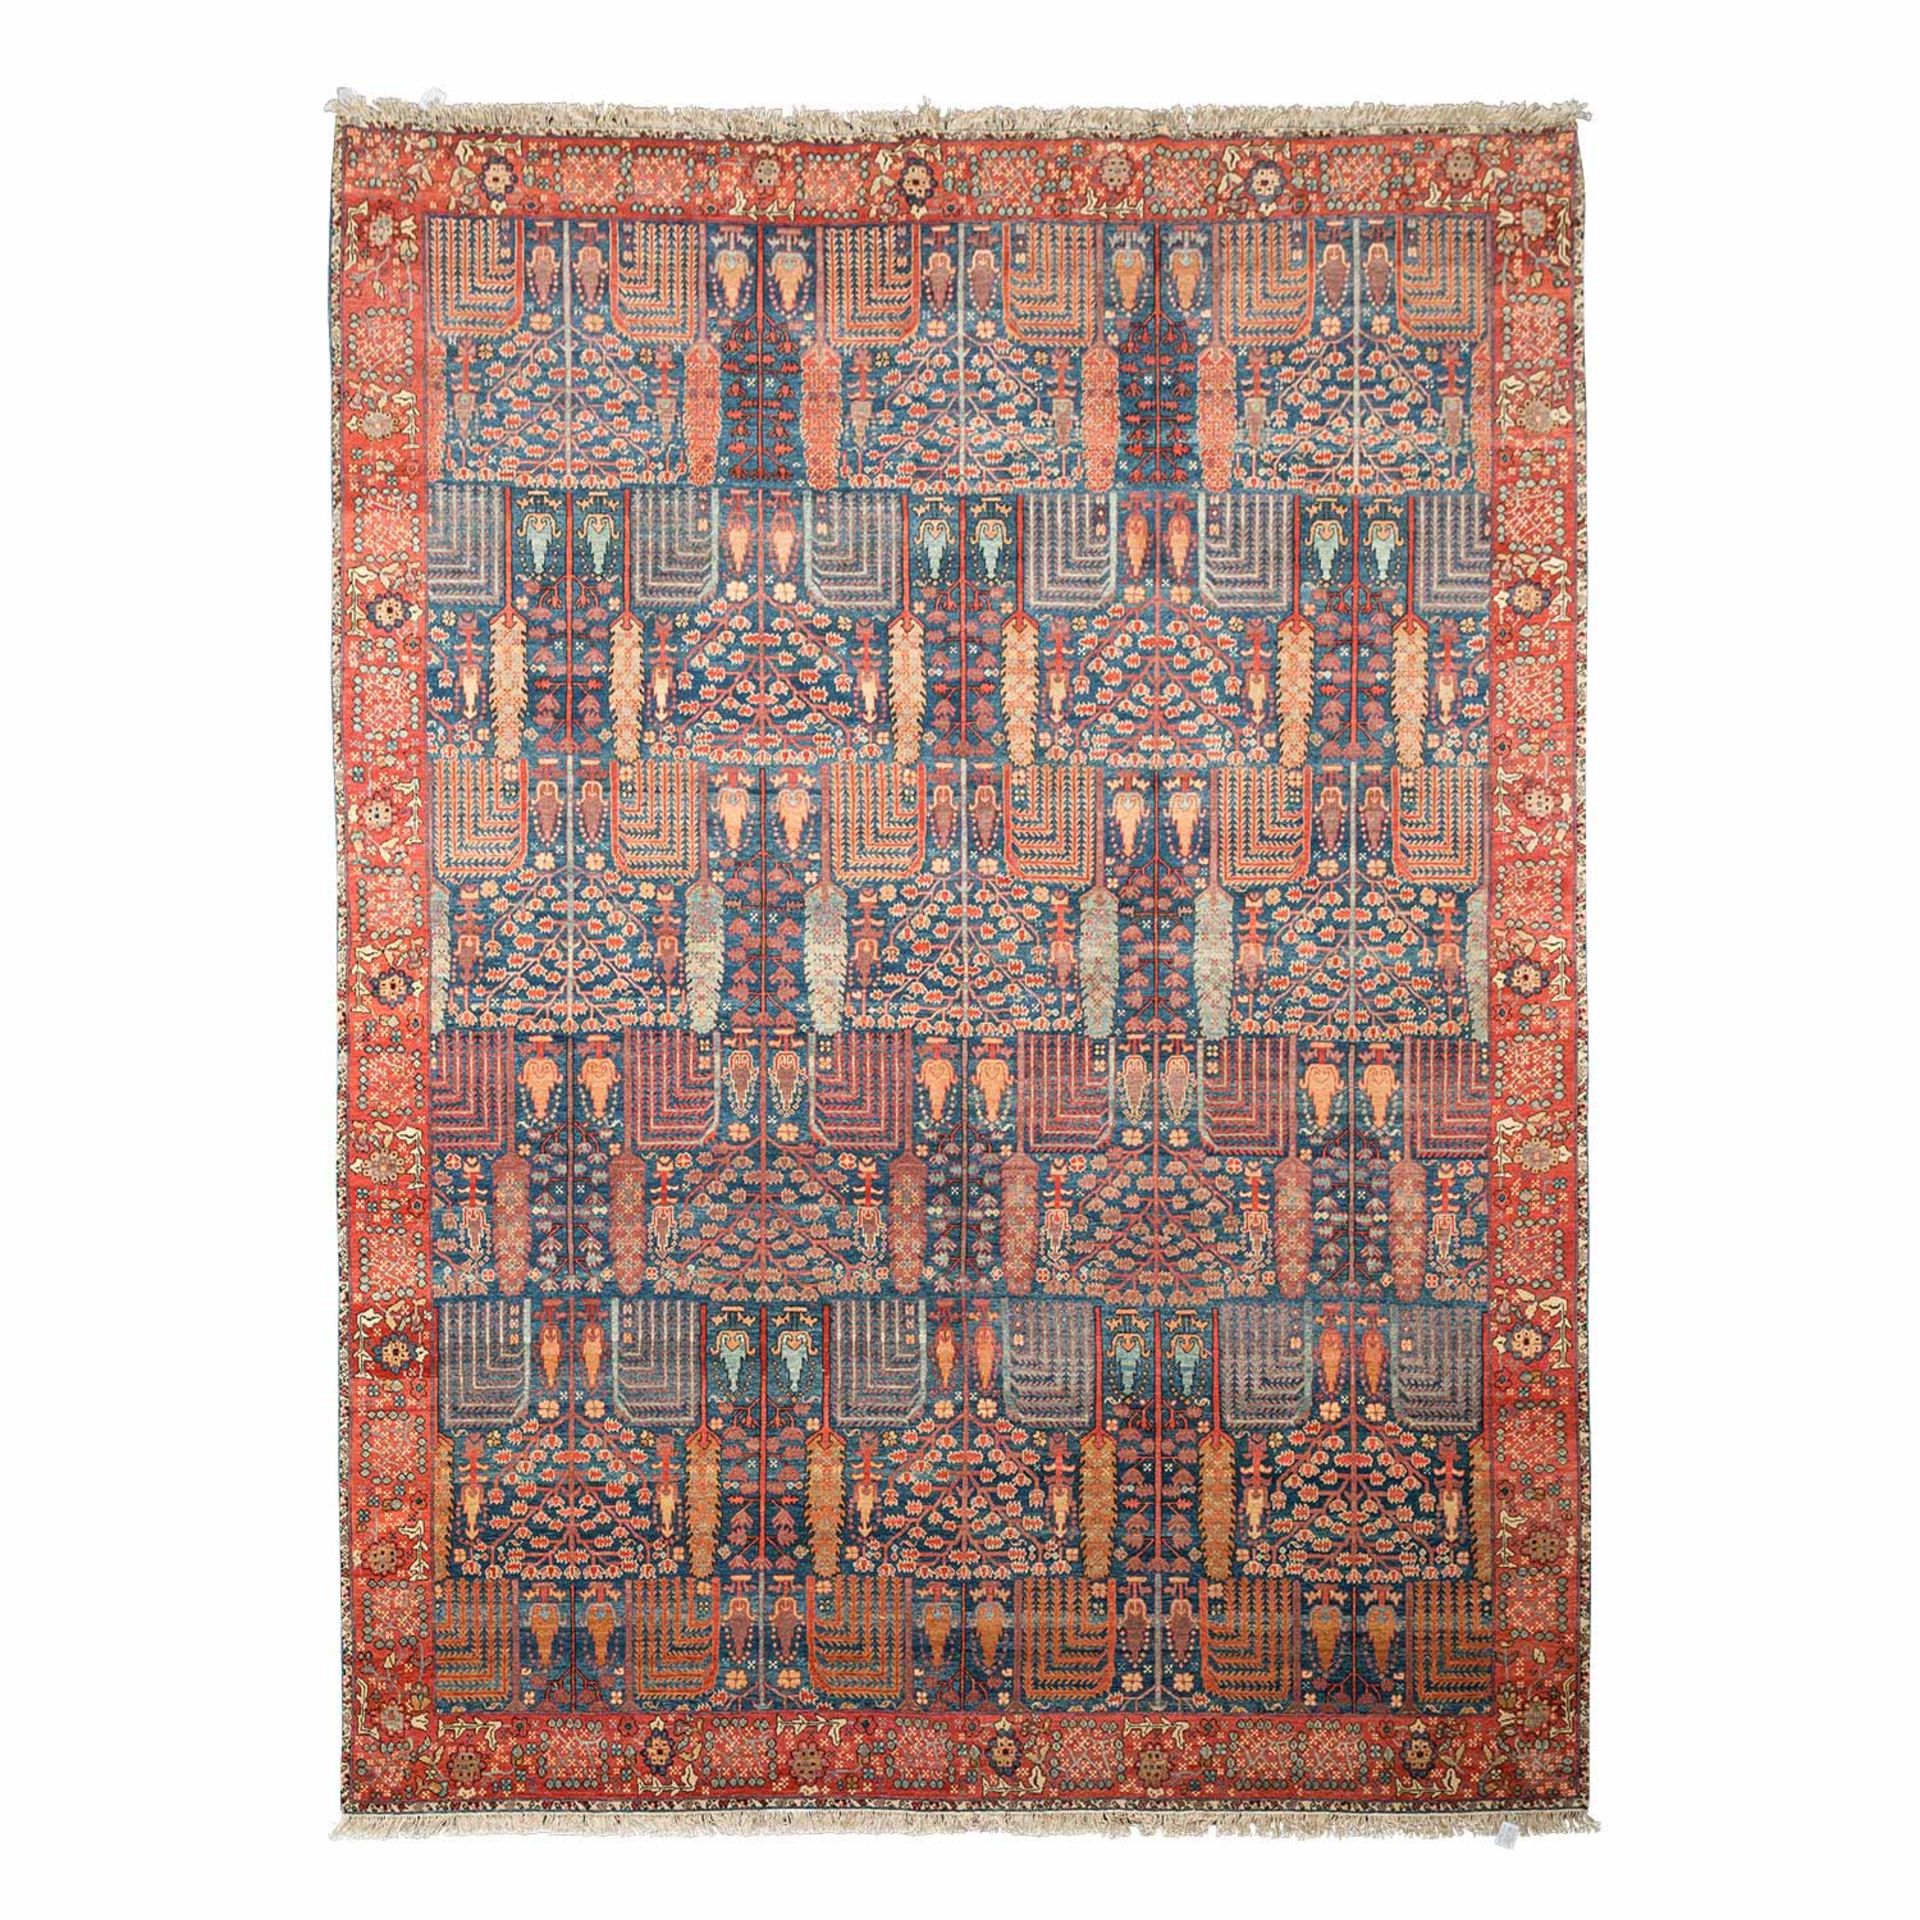 Moderner Orientteppich. KARACHI/PAKISTAN, 21. Jh., 360x268 cm.Der indigoblaue Fond des Innenfeldes